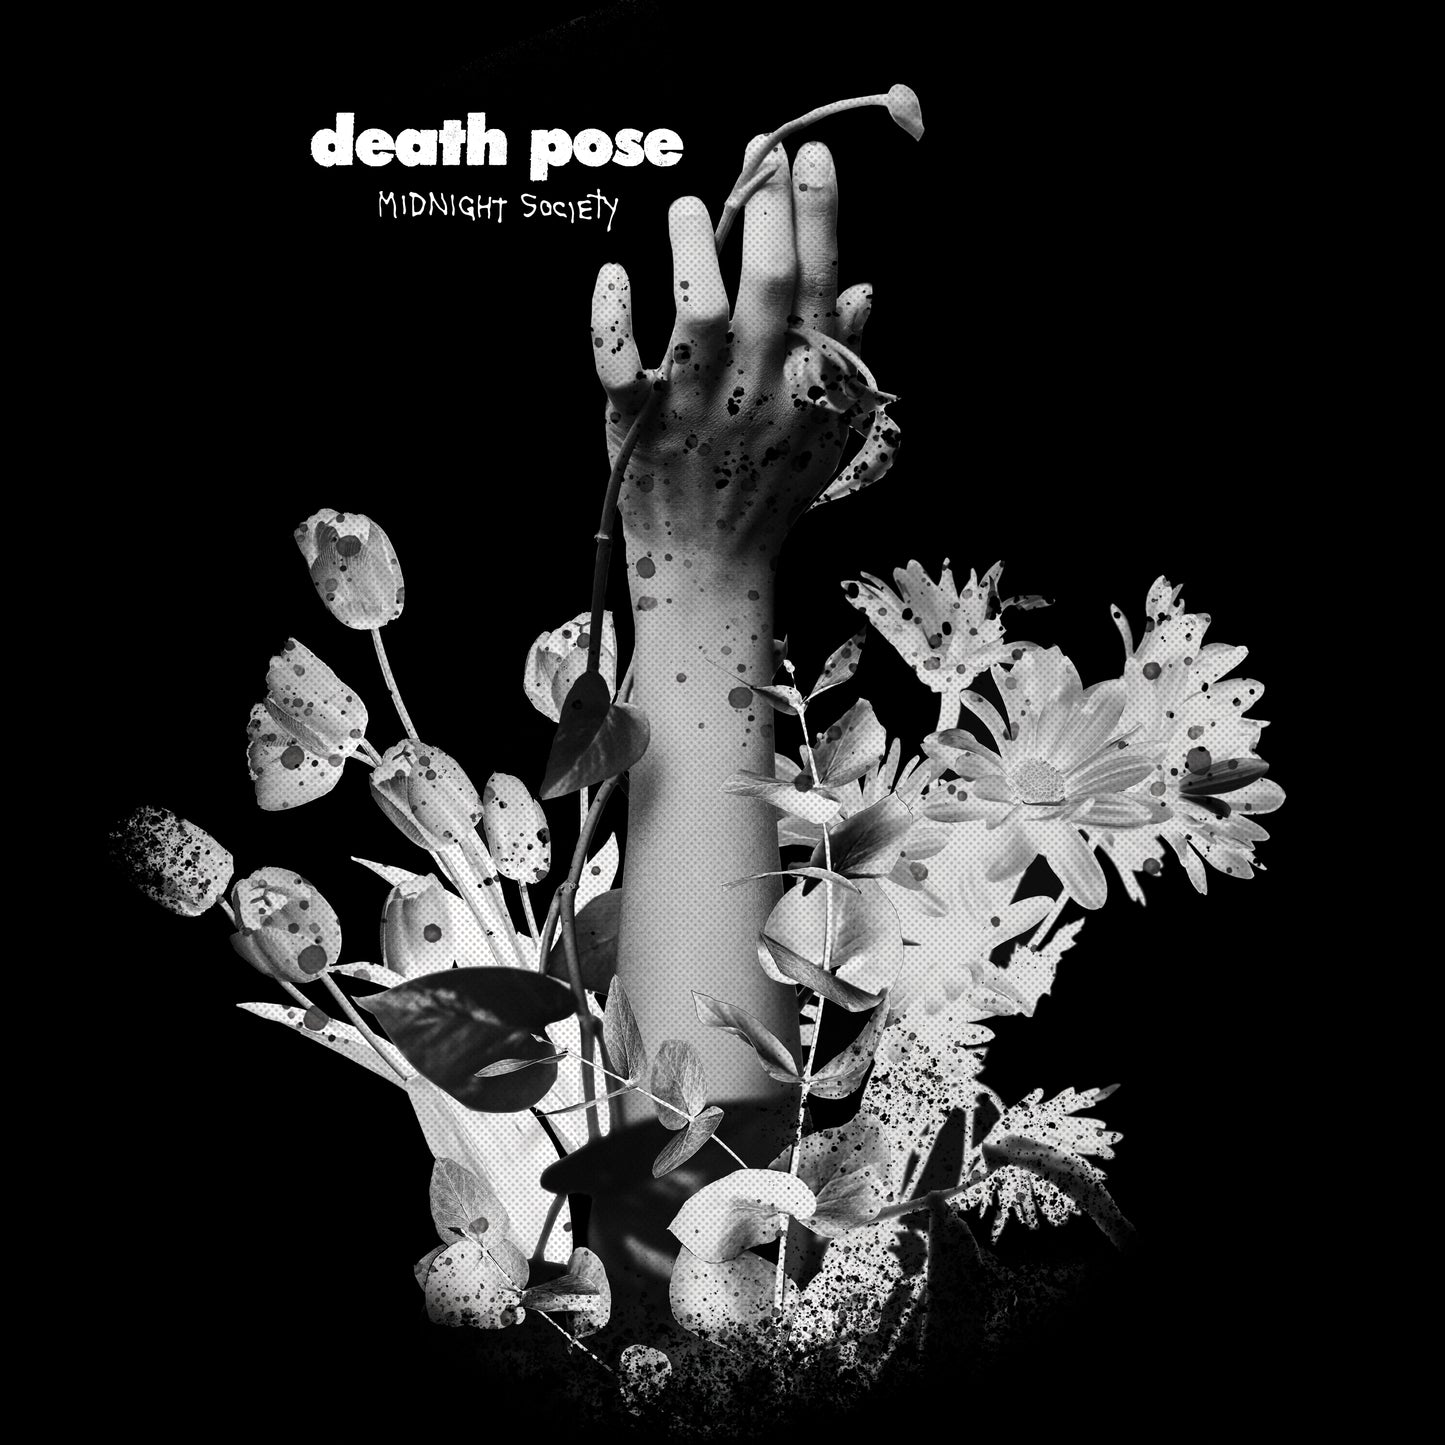 death pose - Midnight Society - 12" Vinyl